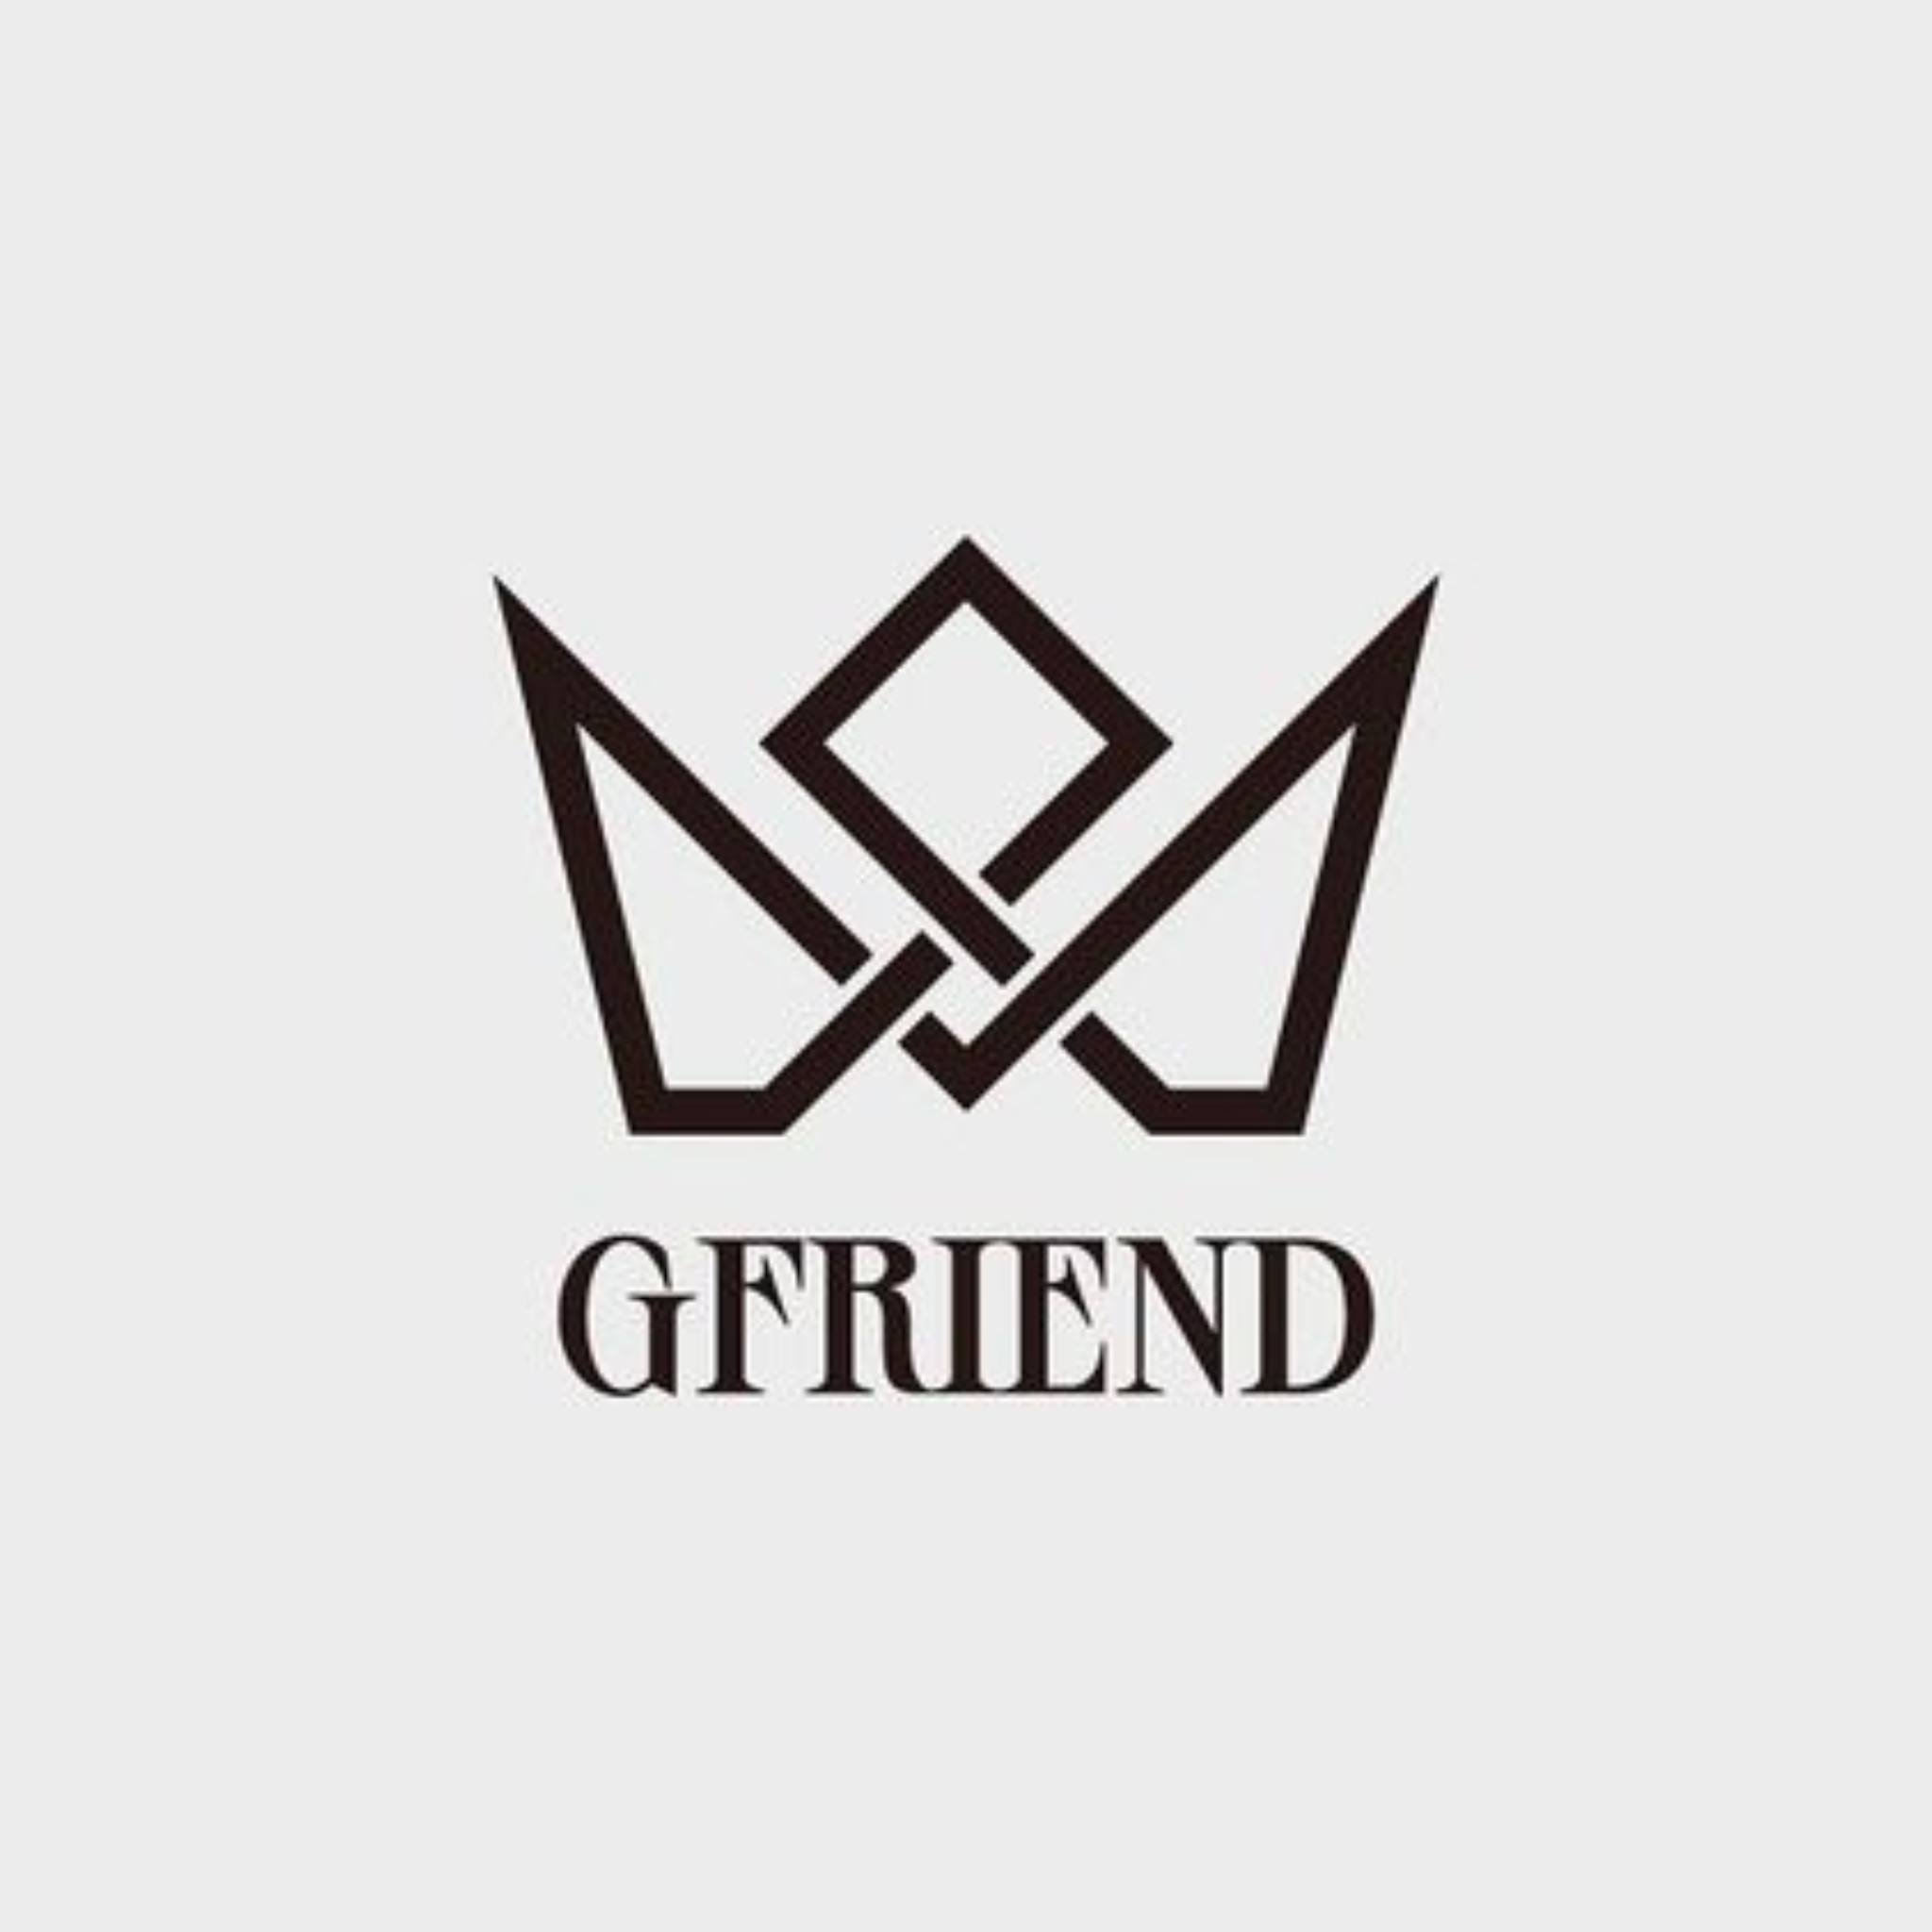 Gfriend_logo.png